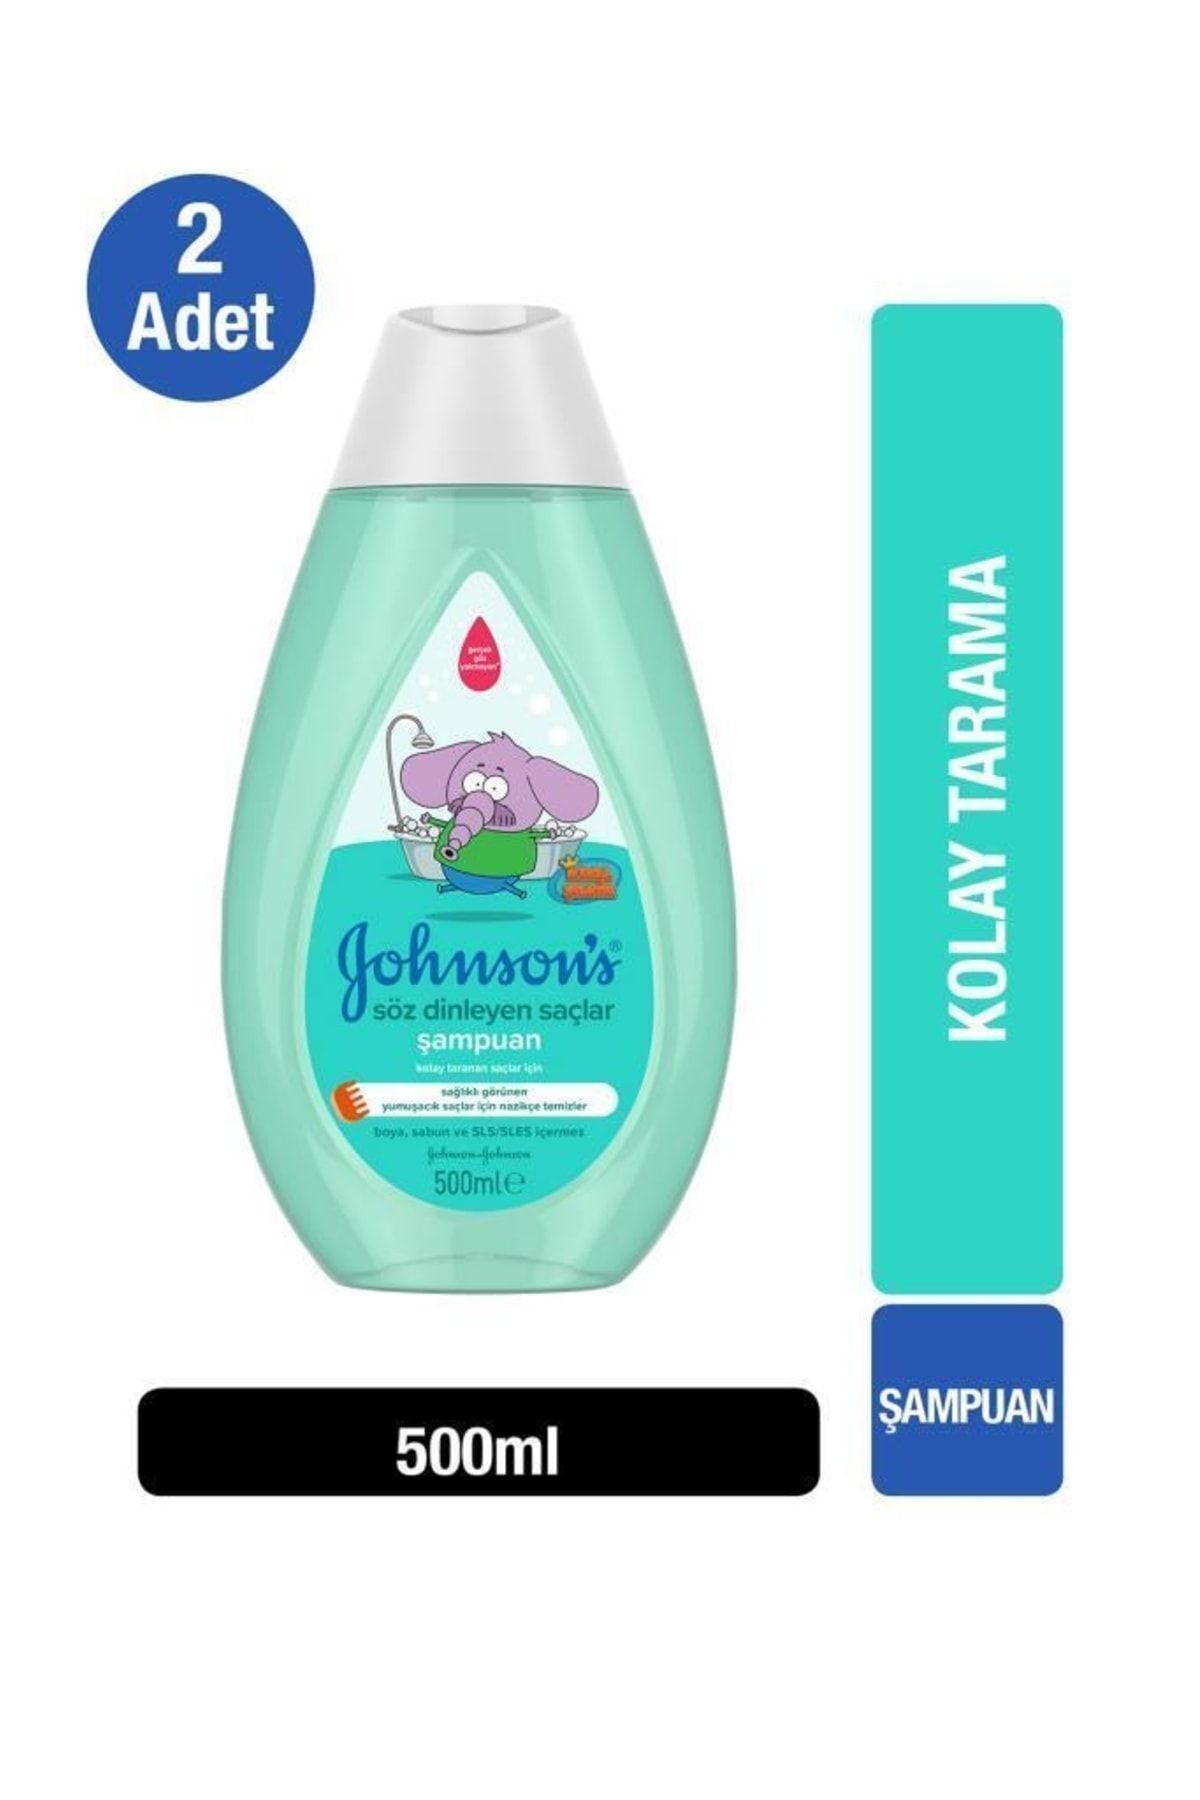 Johnson's Kral Şakir Söz Dinleyen Saçlar Bebek Şampuanı 500 ml X 2 Adet